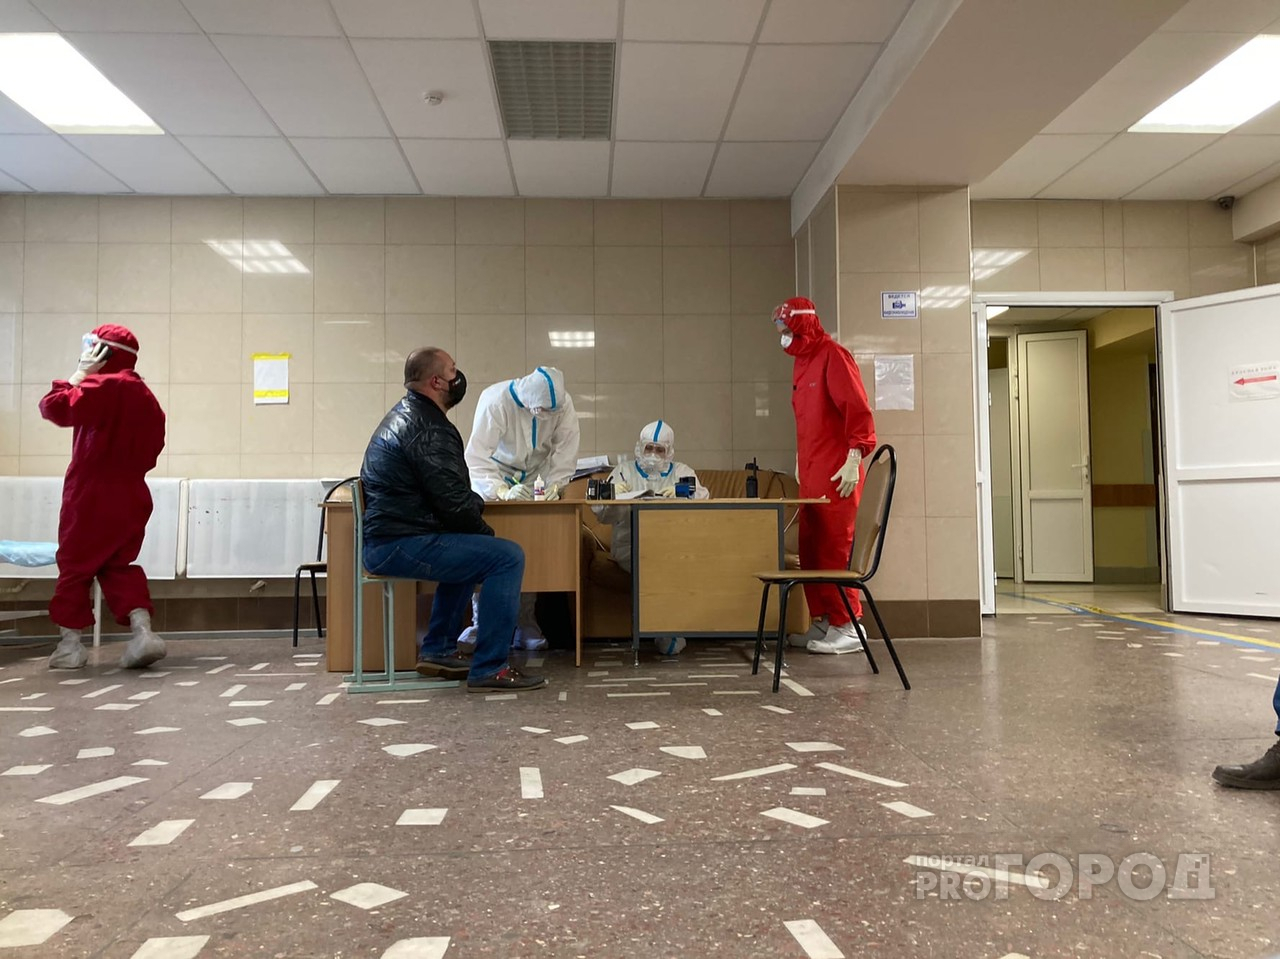 Статистика за сутки: еще 103 человека в Рязанской области заразились коронавирусной инфекцией